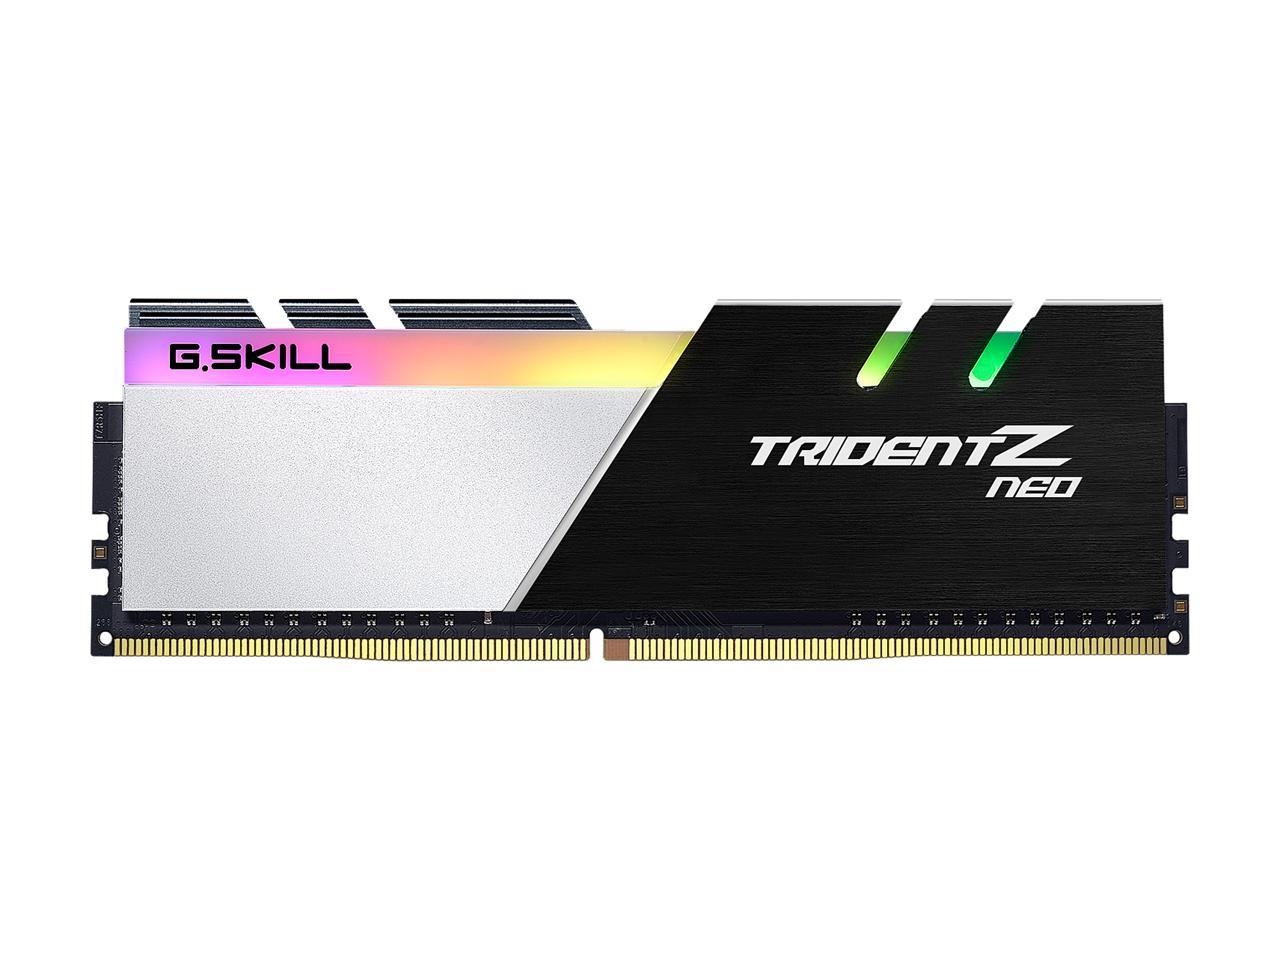 G.SKILL Trident Z Neo Series 64GB (4 x 16GB) 288-Pin PC RAM DDR4 3600 (PC4 28800) Intel XMP 2.0 Desktop Memory Model F4-3600C14Q-64GTZNA